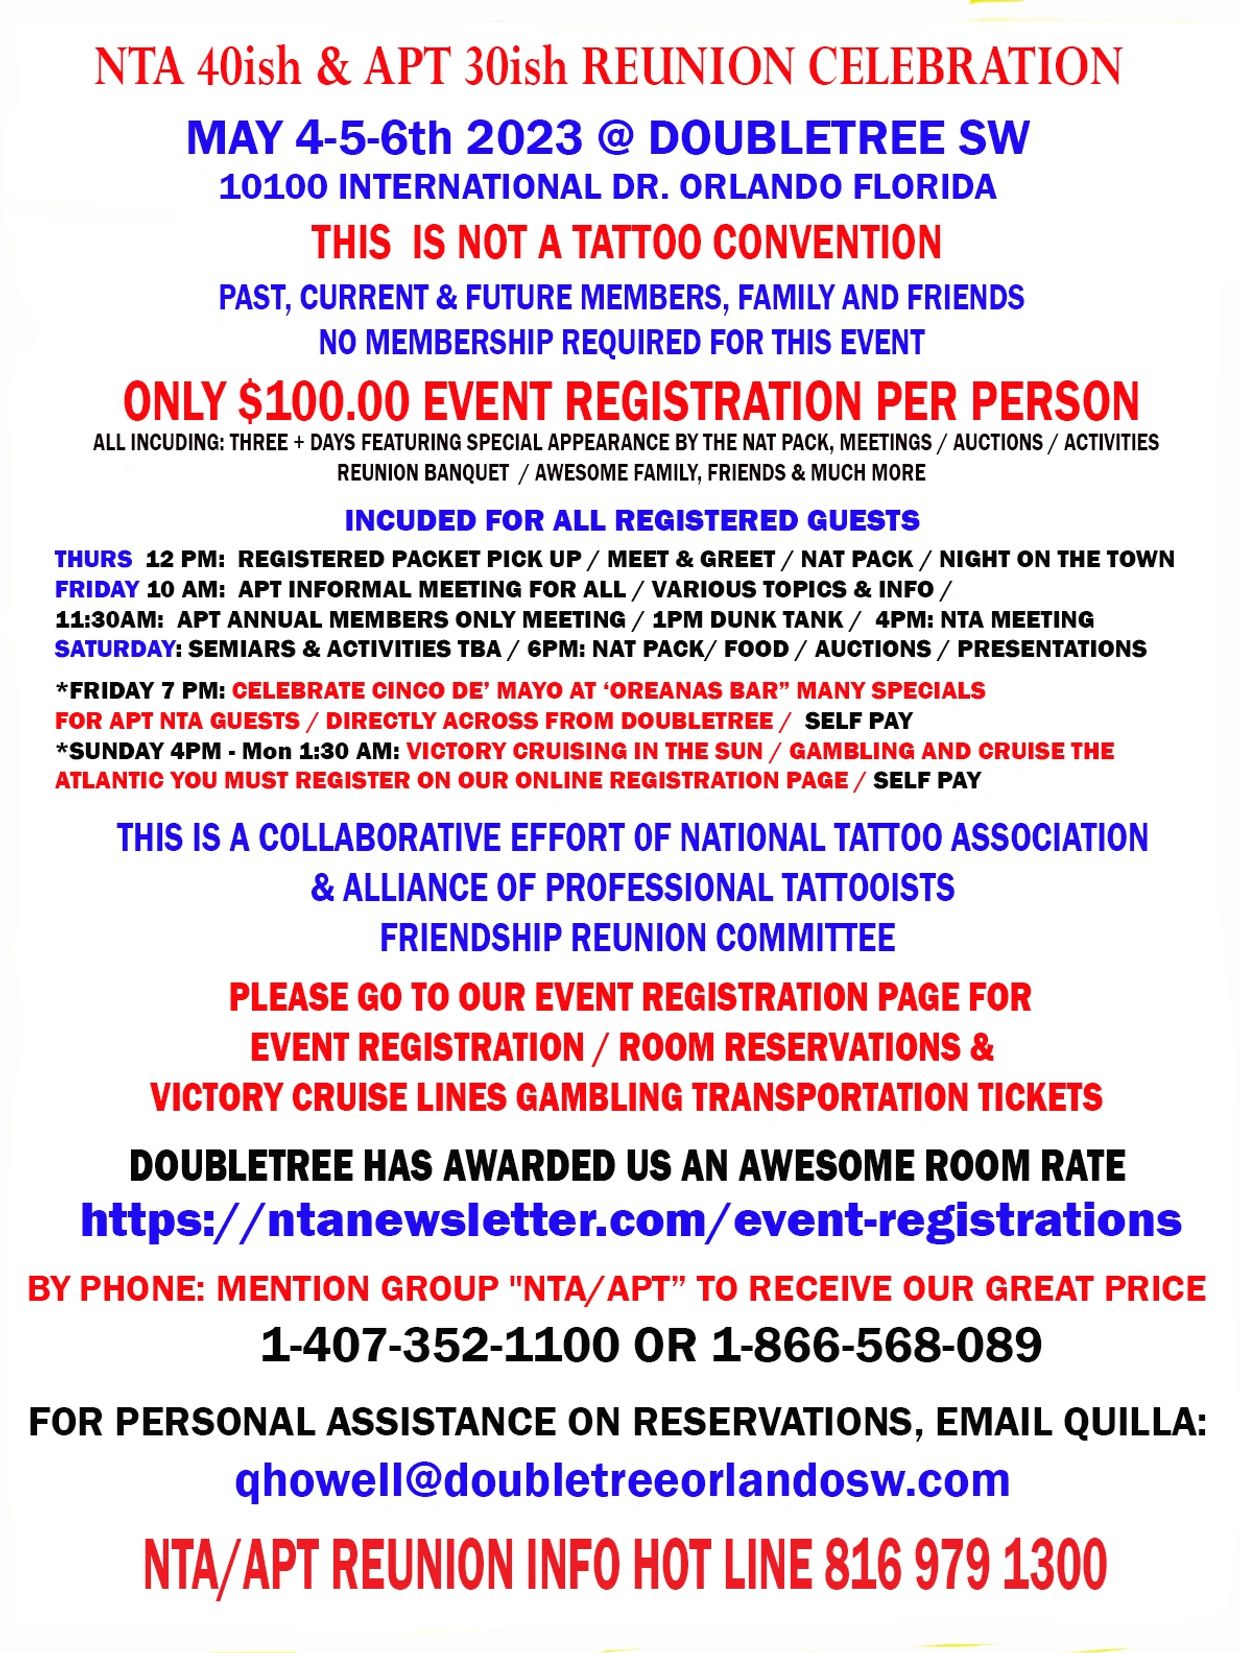 National Tattoo Association News & Articles